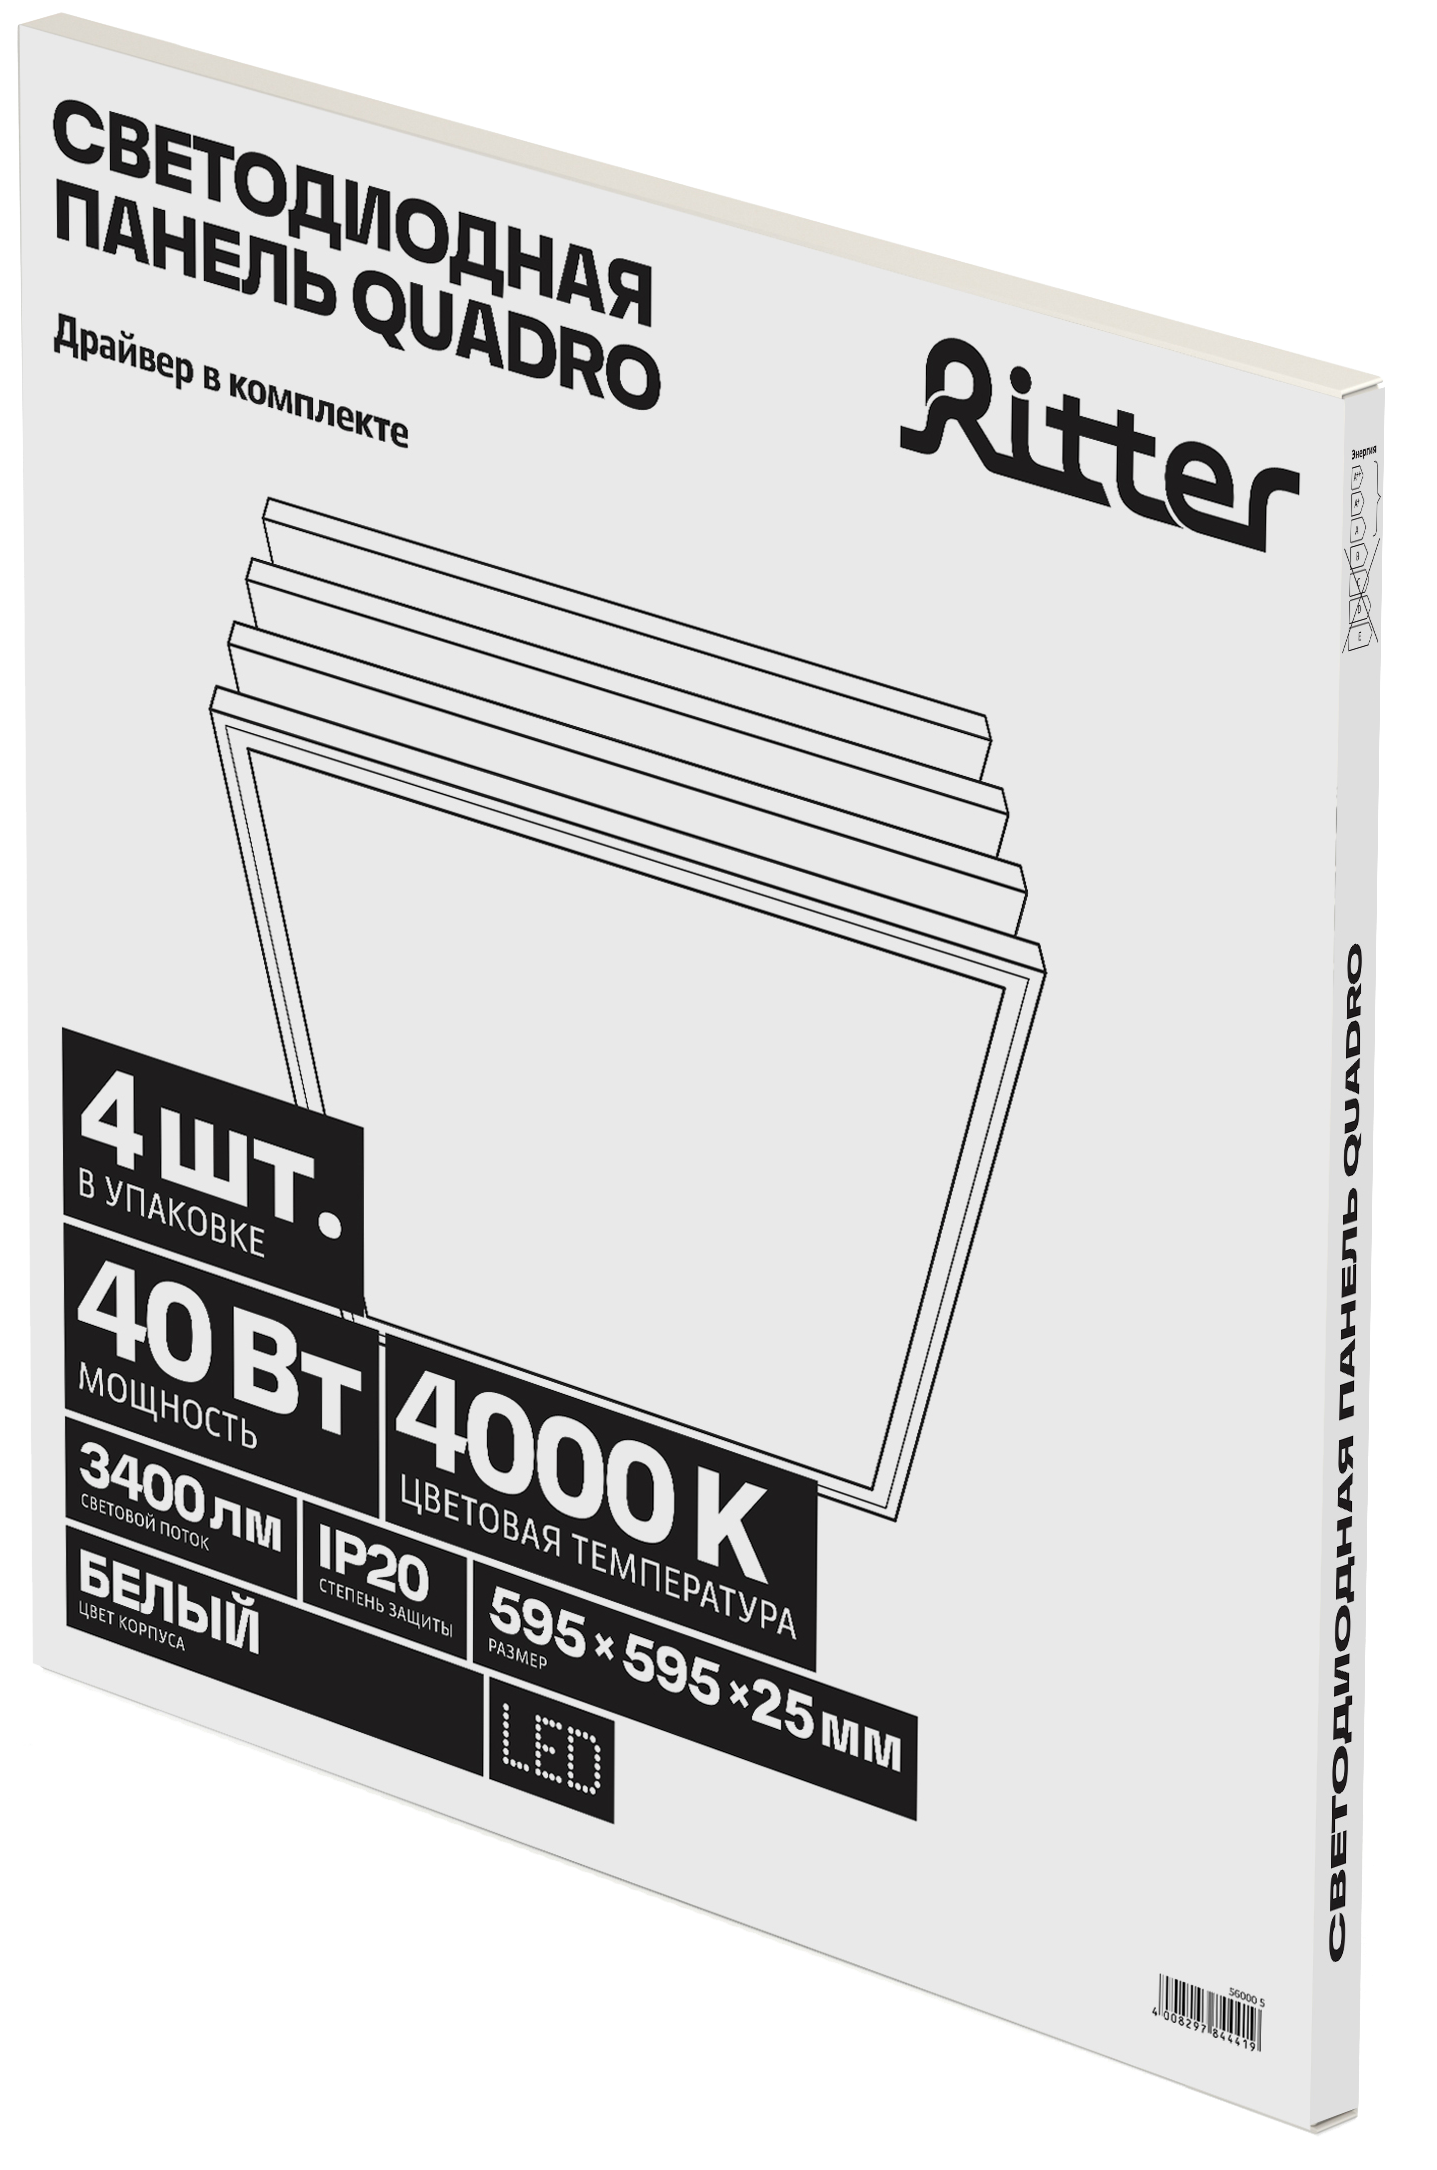 Потолочный светильник Ritter Quadro 56000 5